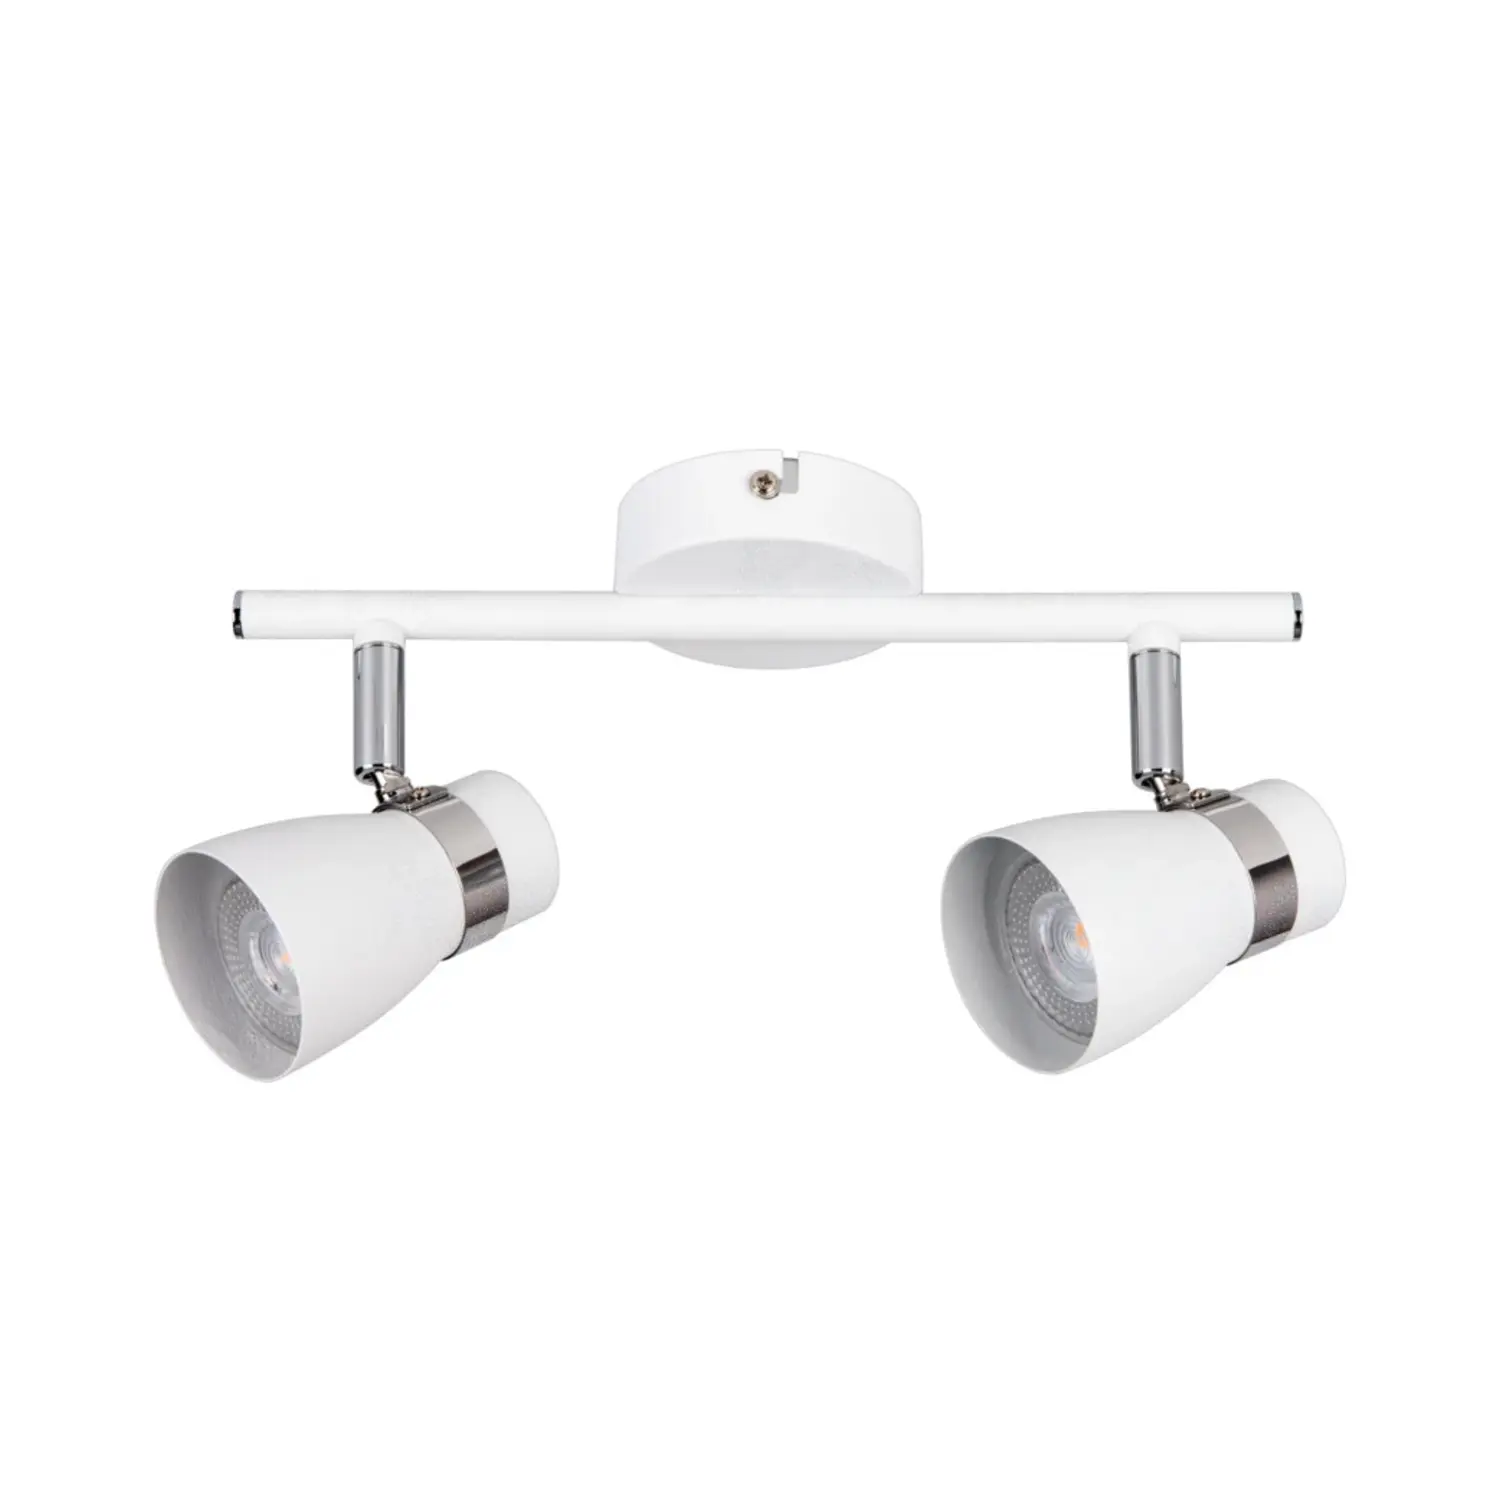 immagine del prodotto lampada faretto parete soffitto enali bianco 2 luci orientabile